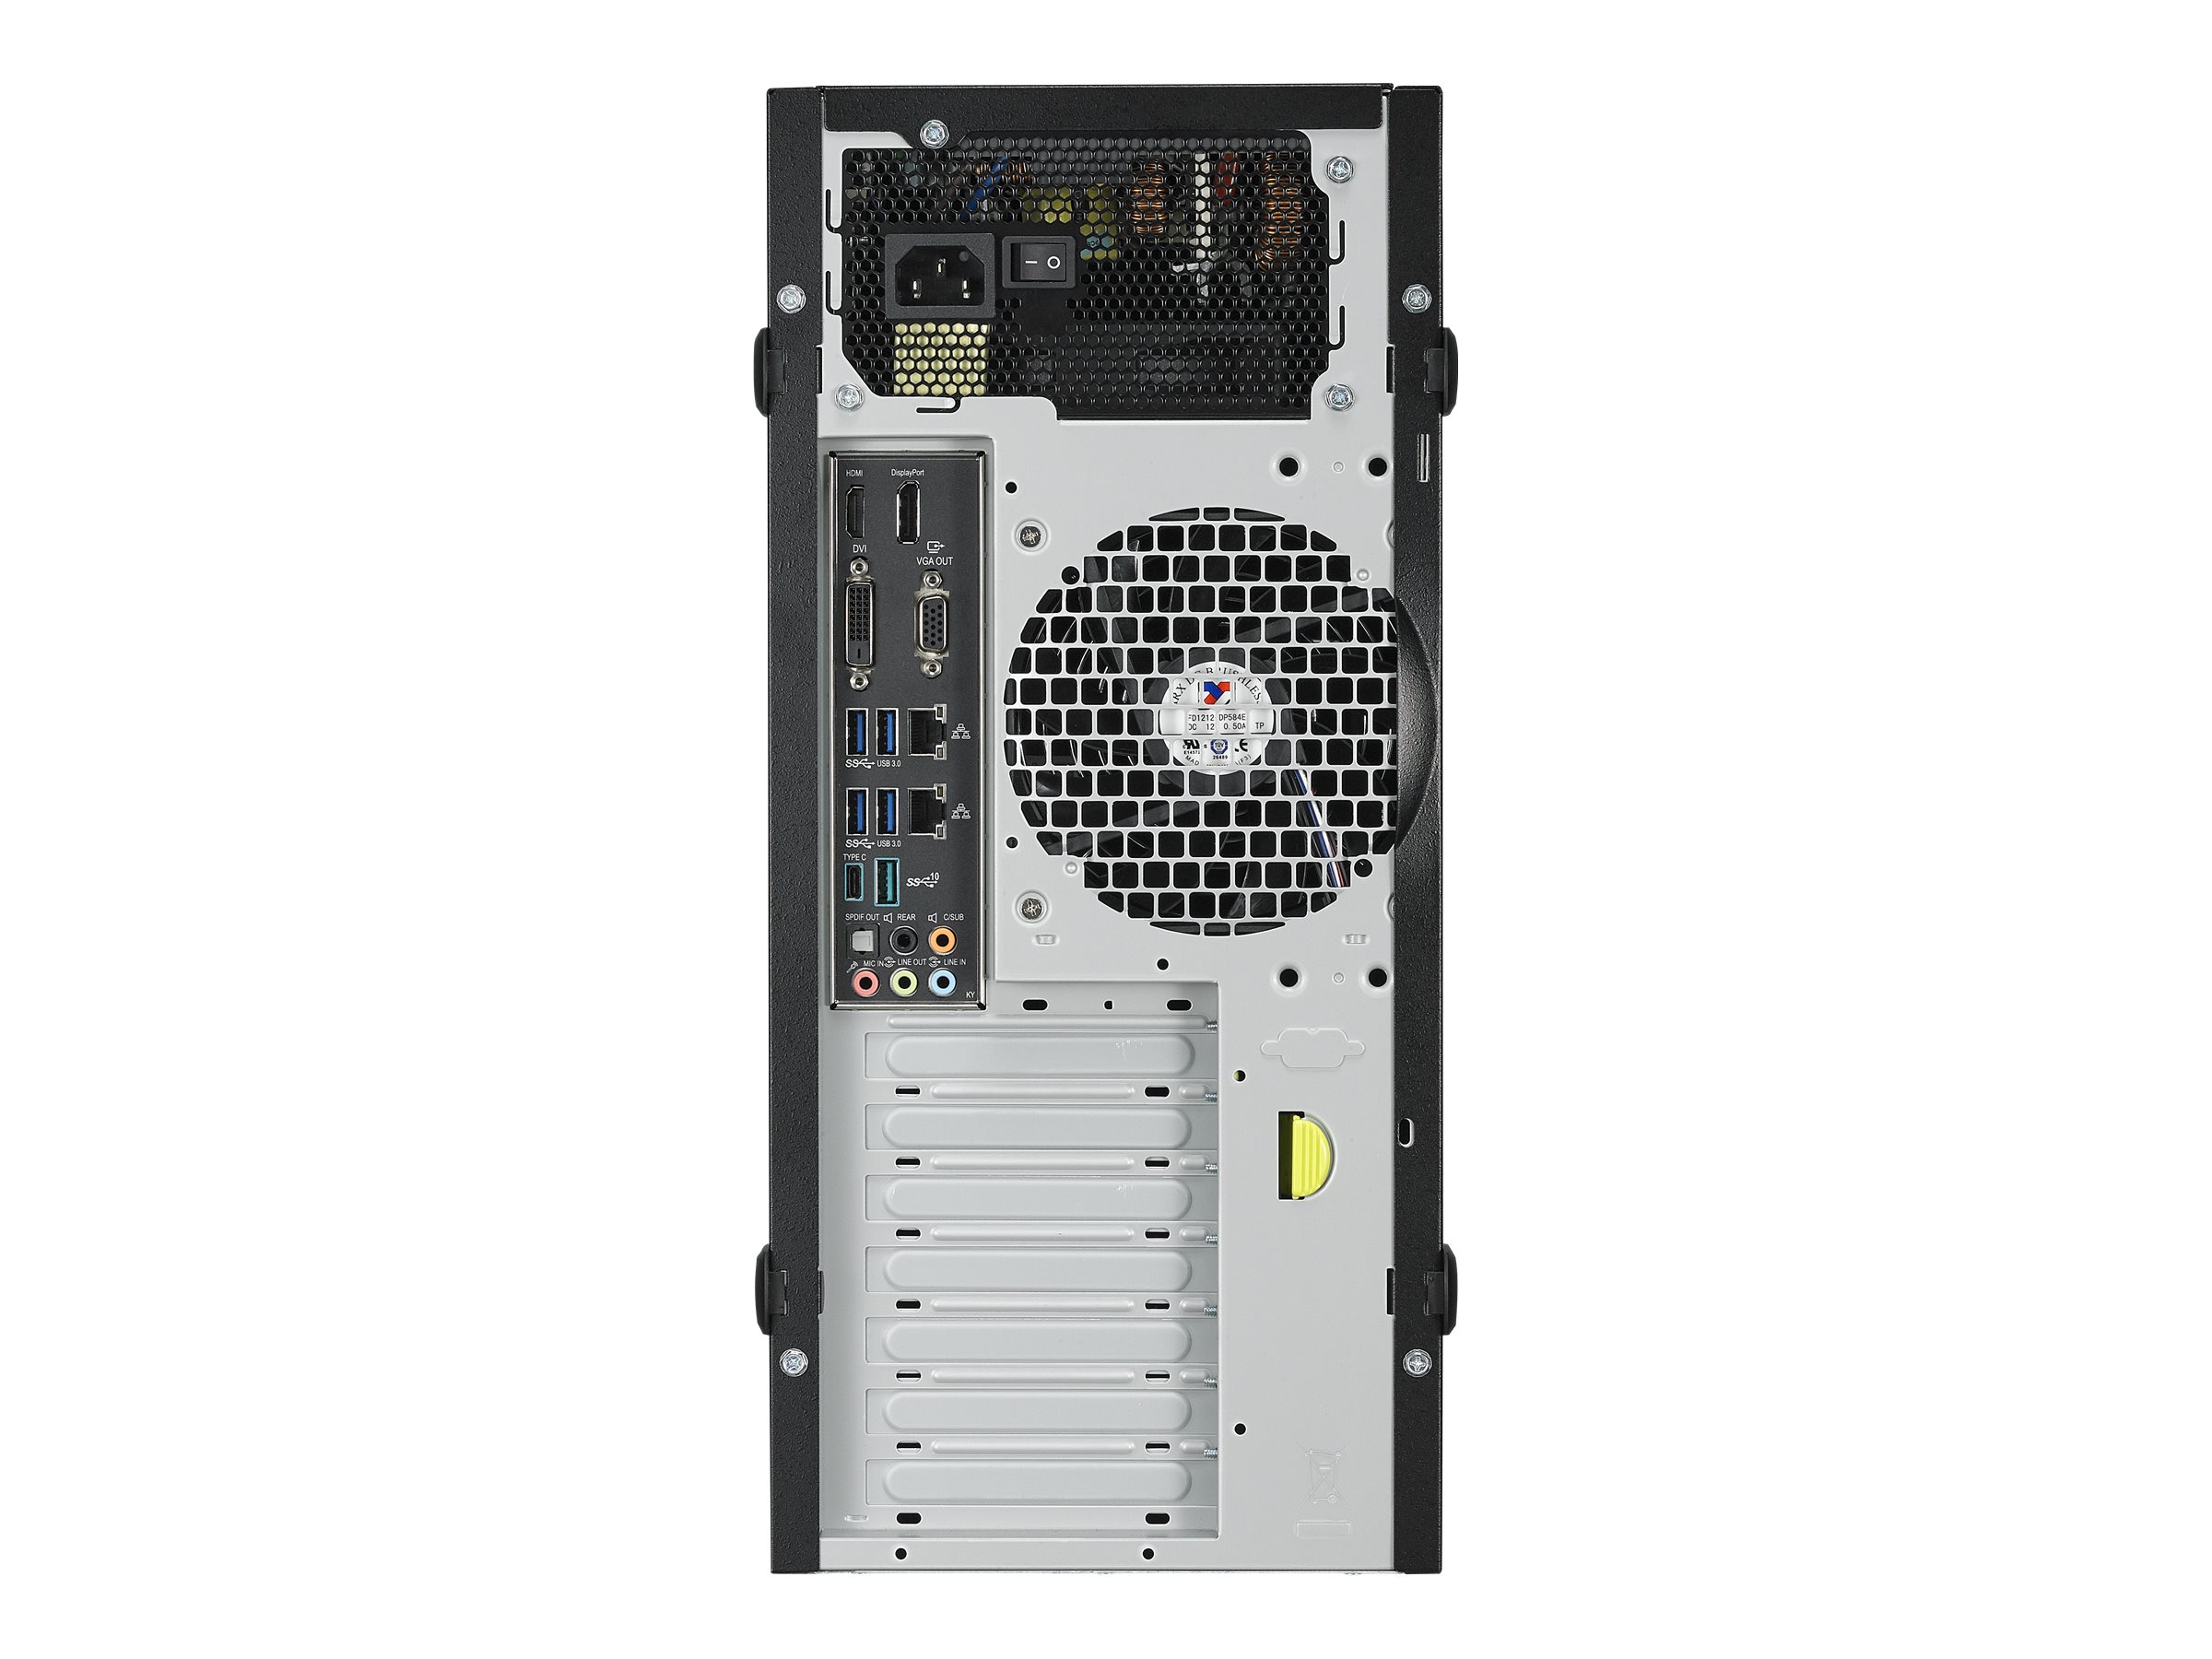 ASUS E500 G5-M3960 - Tour - 1 x Core i5 8500 / 3 GHz - RAM 8 Go - HDD 1 To - graveur de DVD - Quadro P620 - Gigabit Ethernet - Win 10 Pro - moniteur : aucun - 90SF00Q1-M03960 - Ordinateurs de bureau